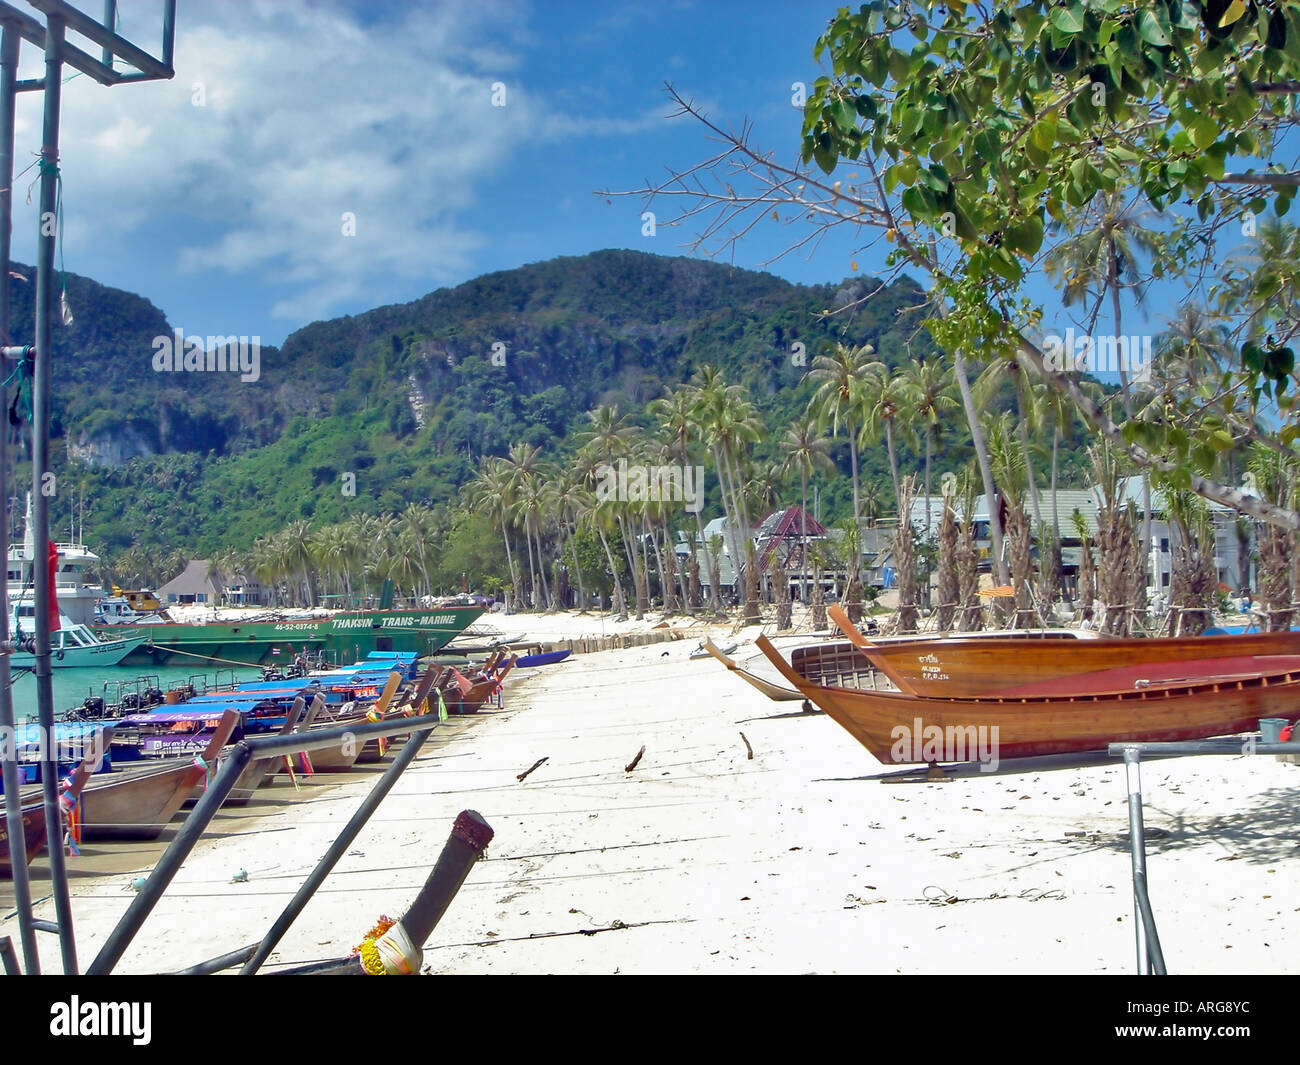 "Khao Phing Kan Isla' Tailandia reconstruido después de 'Playa' Tsunumi paisaje tropical en el mar con embarcaciones de pesca 'exótico' 'Vacaciones' Foto de stock